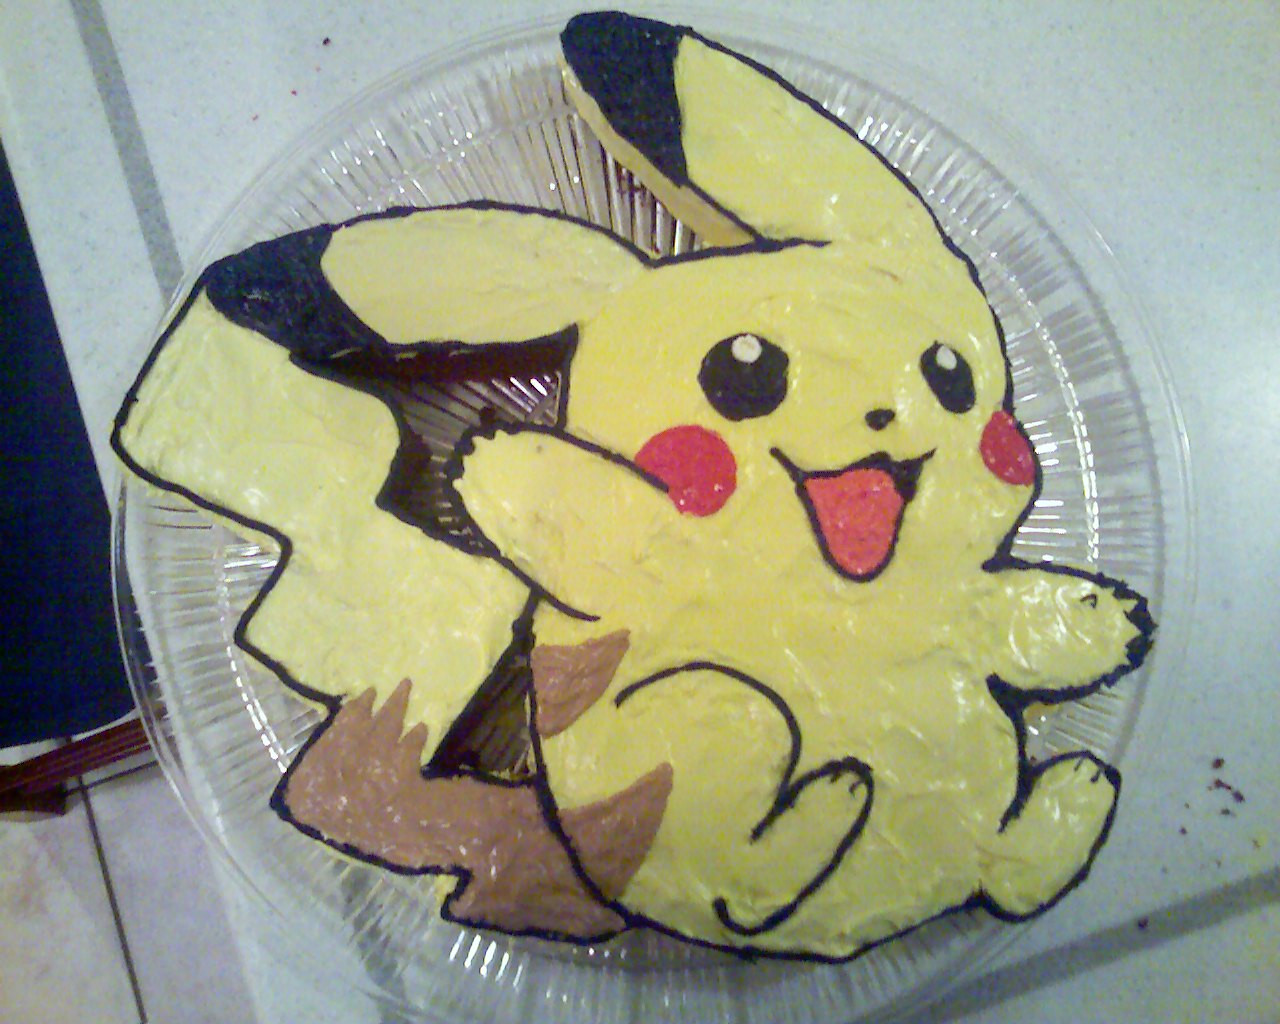 Pikachu_Cake_by_Kikyo5622.jpg